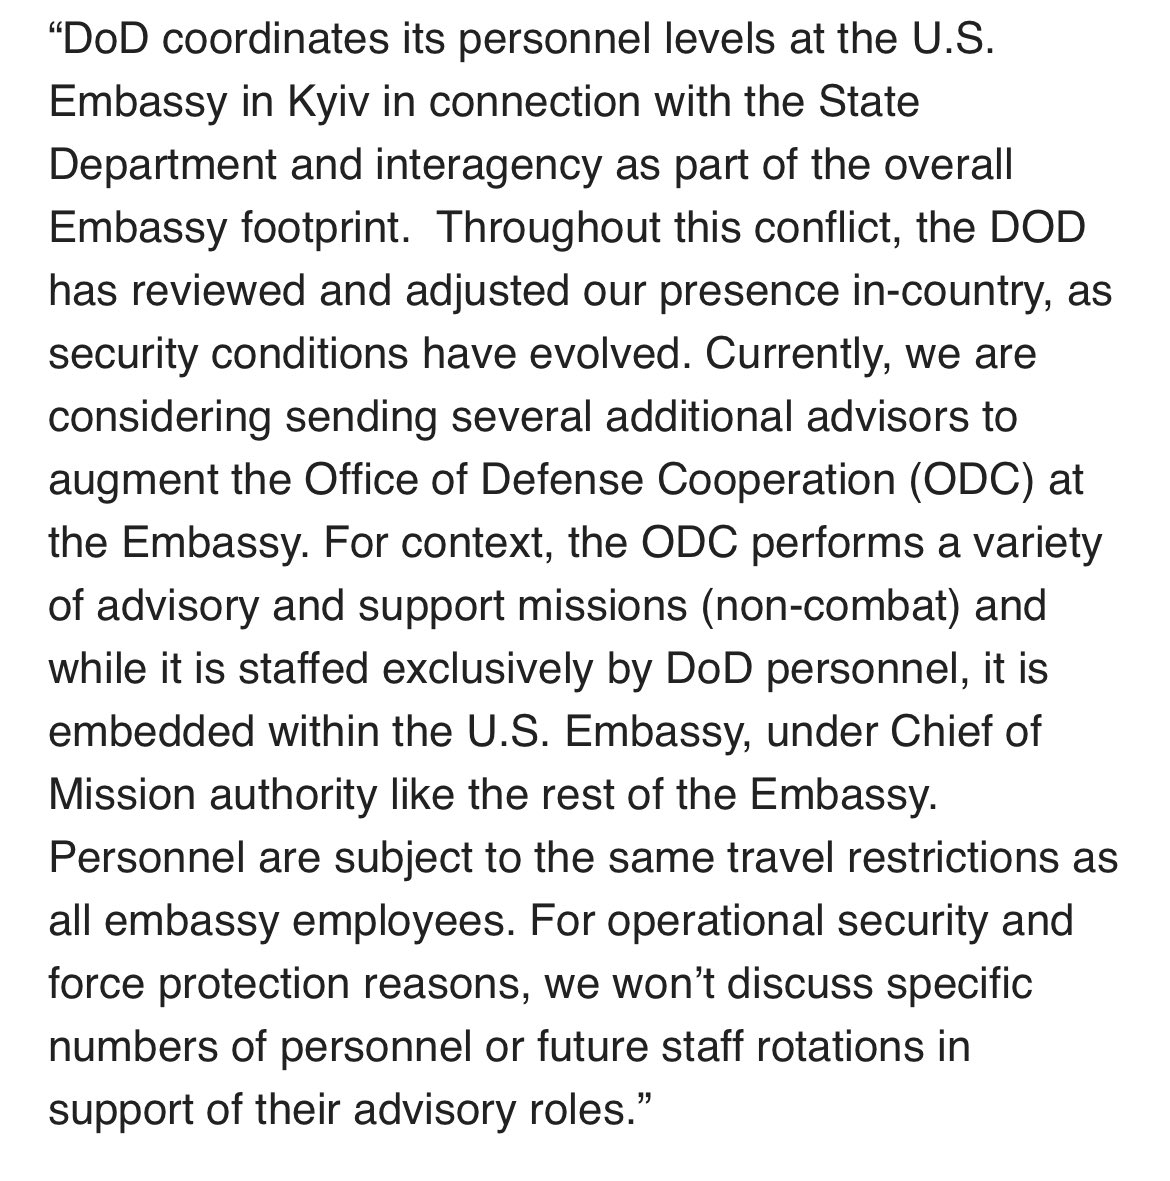 Οι ΗΠΑ ενδέχεται να στείλουν περισσότερα στρατεύματα στην Ουκρανία για να είναι σύμβουλοι με έδρα στην πρεσβεία, χωρίς να συμμετέχουν σε μάχες. Από το @PentagonPresSec στη VOA- Προς το παρόν, εξετάζουμε το ενδεχόμενο αποστολής αρκετών επιπλέον συμβούλων για να ενισχύσουμε το γραφείο του Def. Coop. στην Πρεσβεία. Συμβουλευτική και υποστήριξη